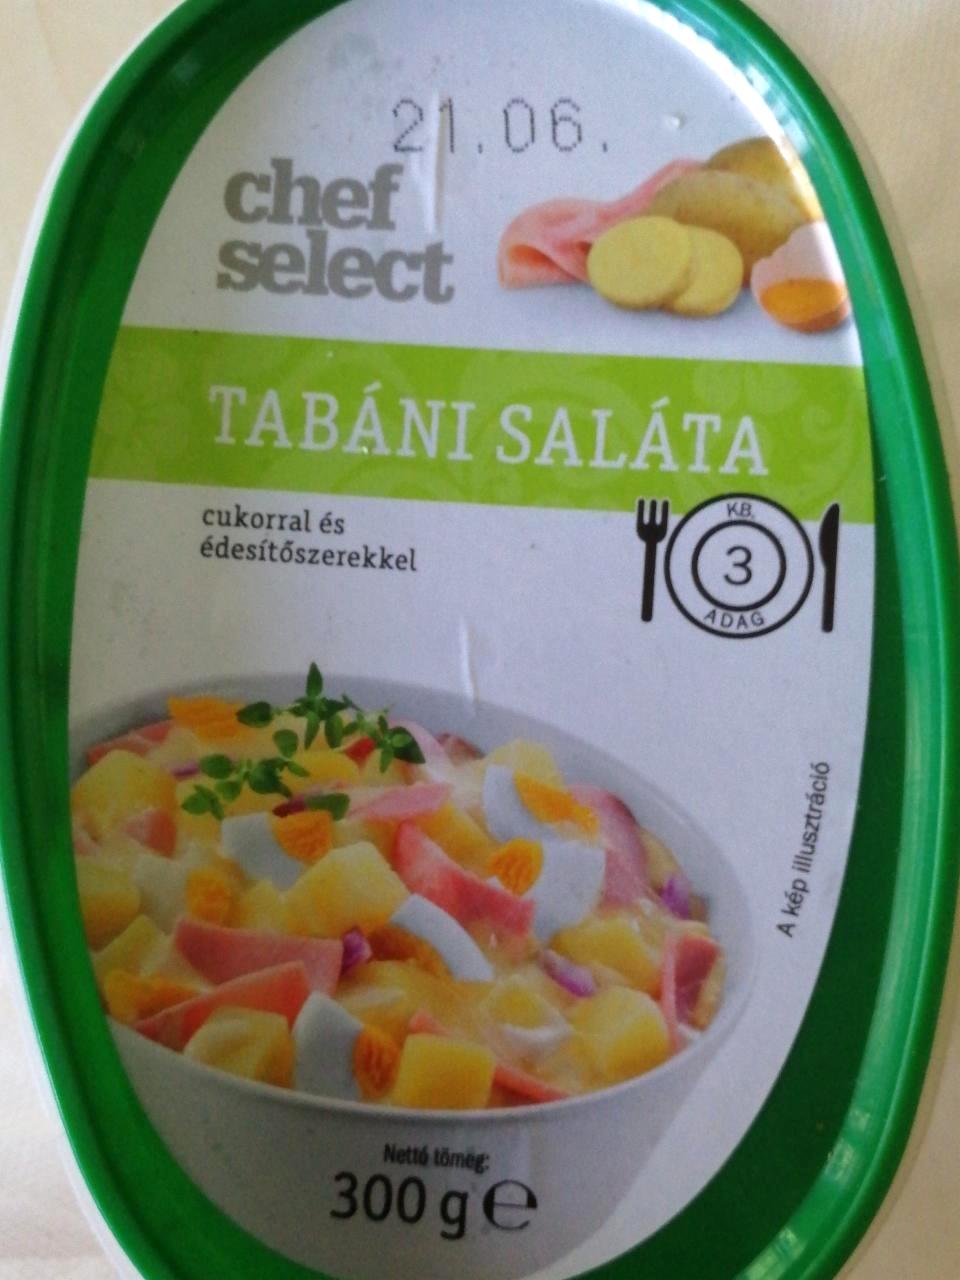 Tabáni saláta Chef kJ tápértékek select és kalória, 